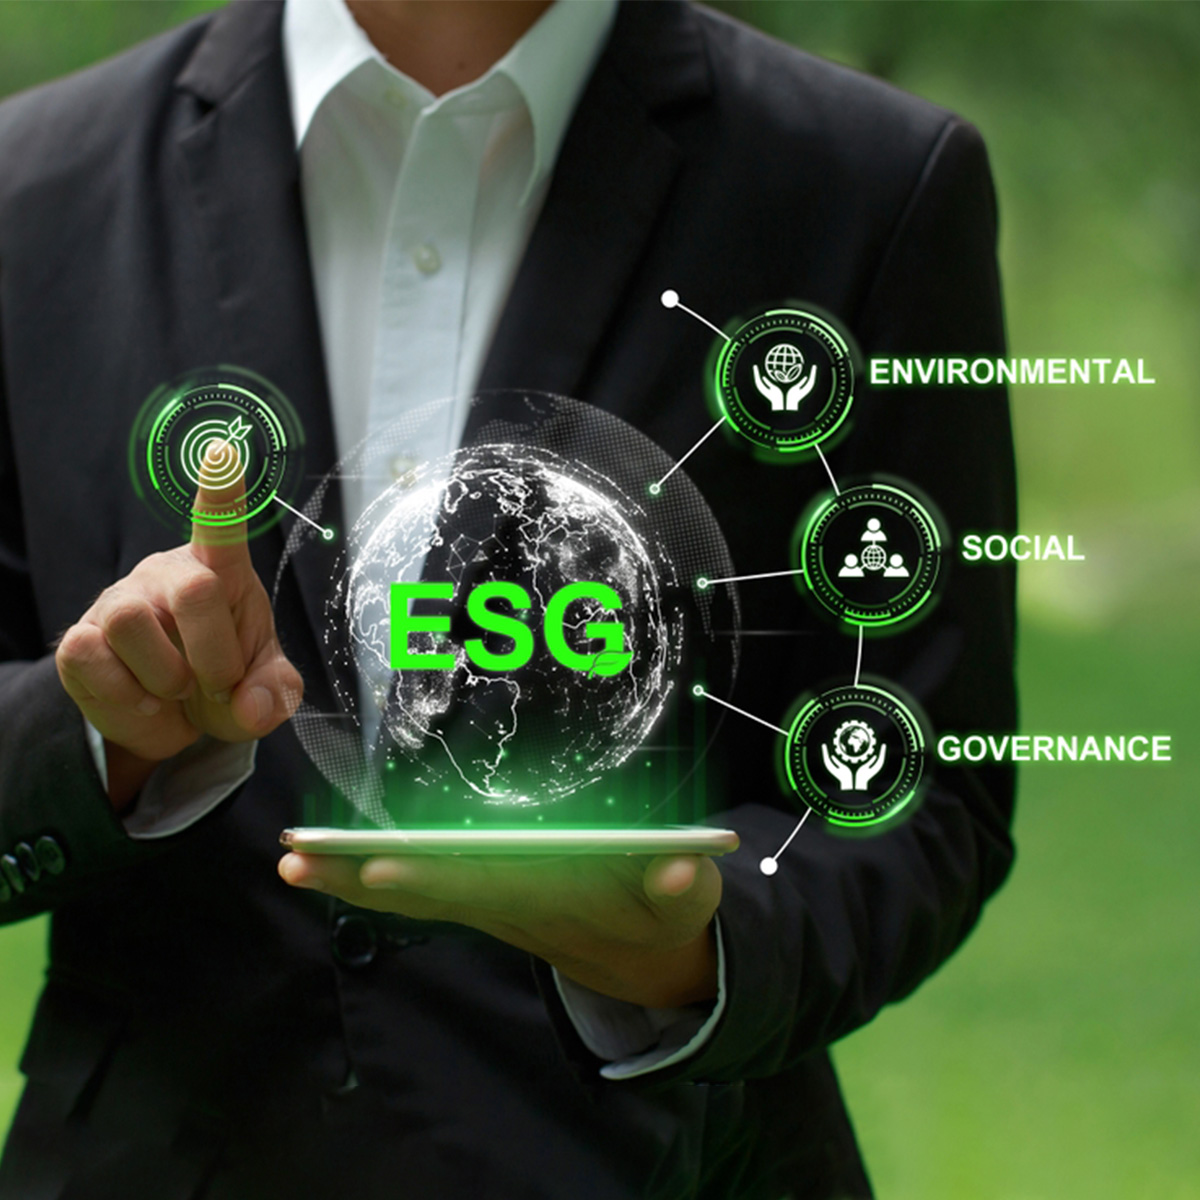 ธุรกิจ ESG มีแนวโน้มที่ต่อเติบโตในอนาคต